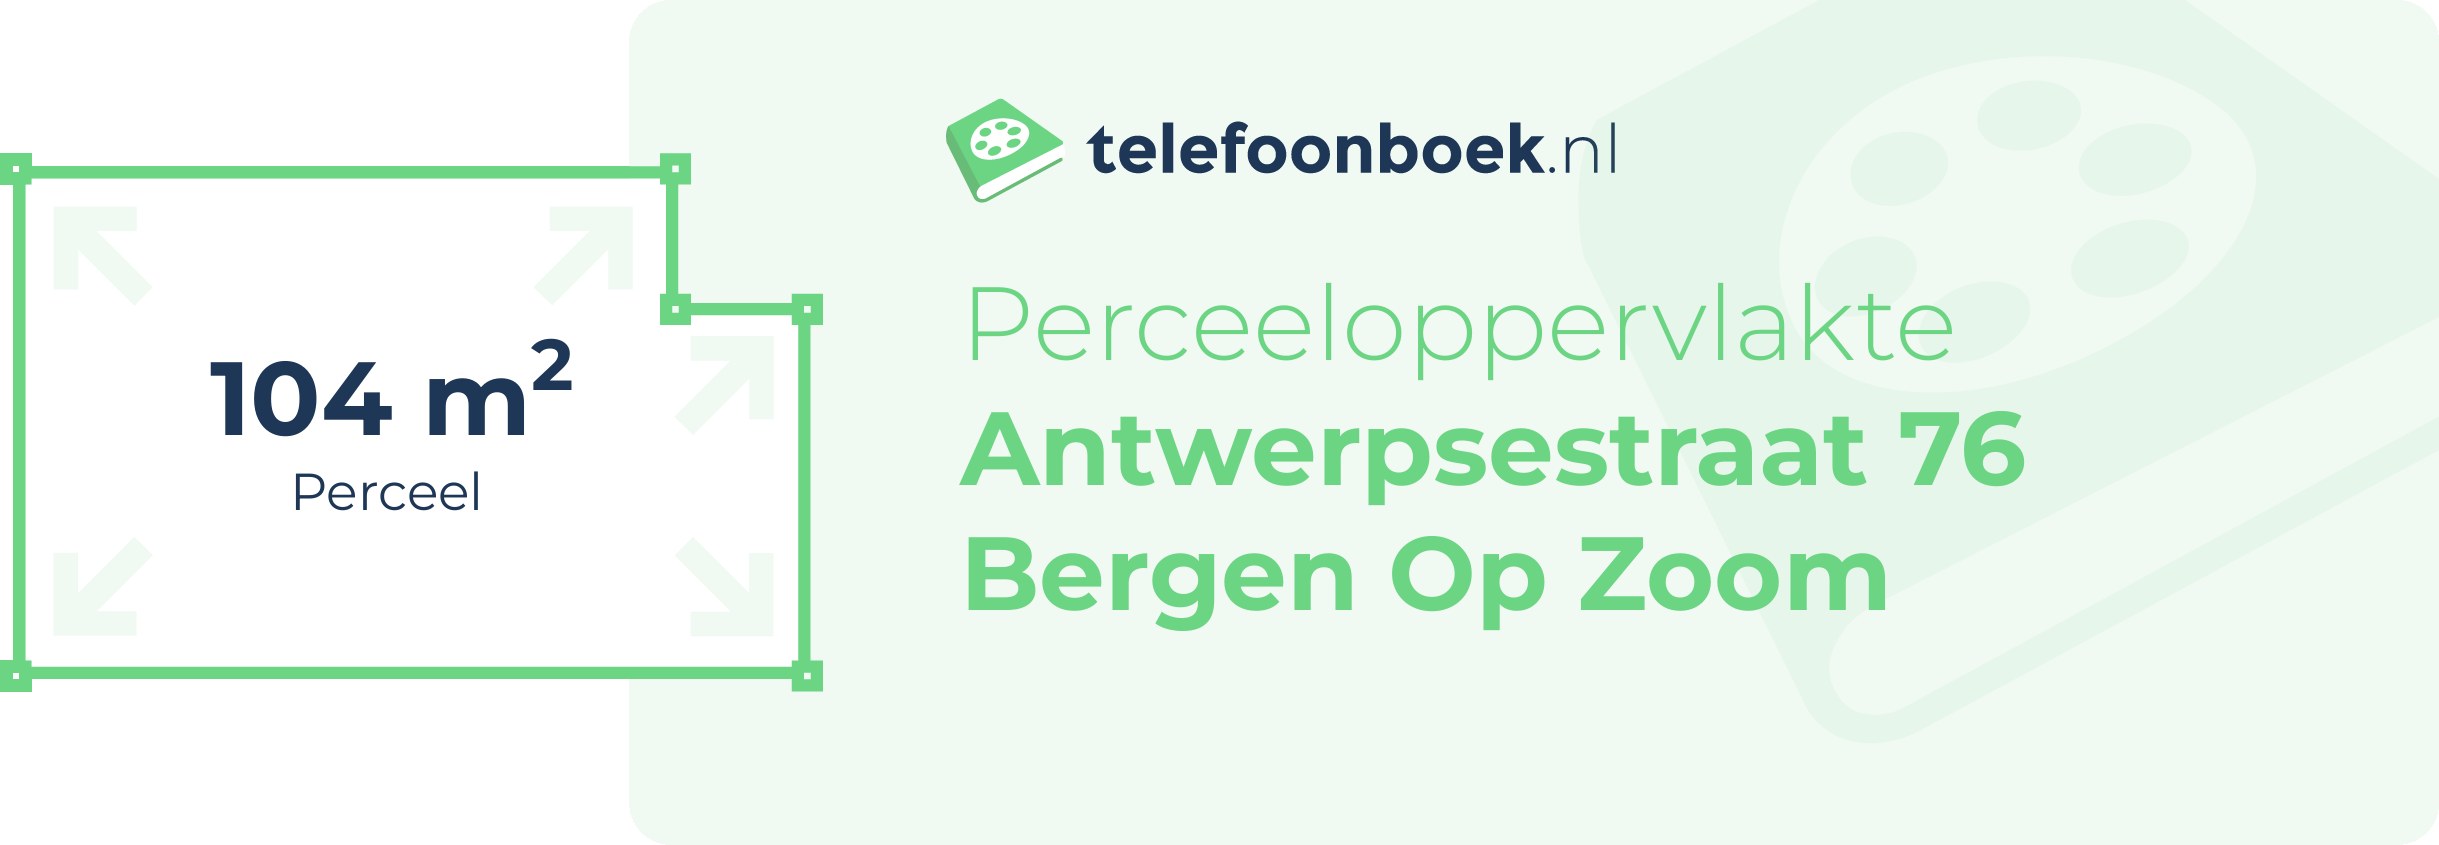 Perceeloppervlakte Antwerpsestraat 76 Bergen Op Zoom